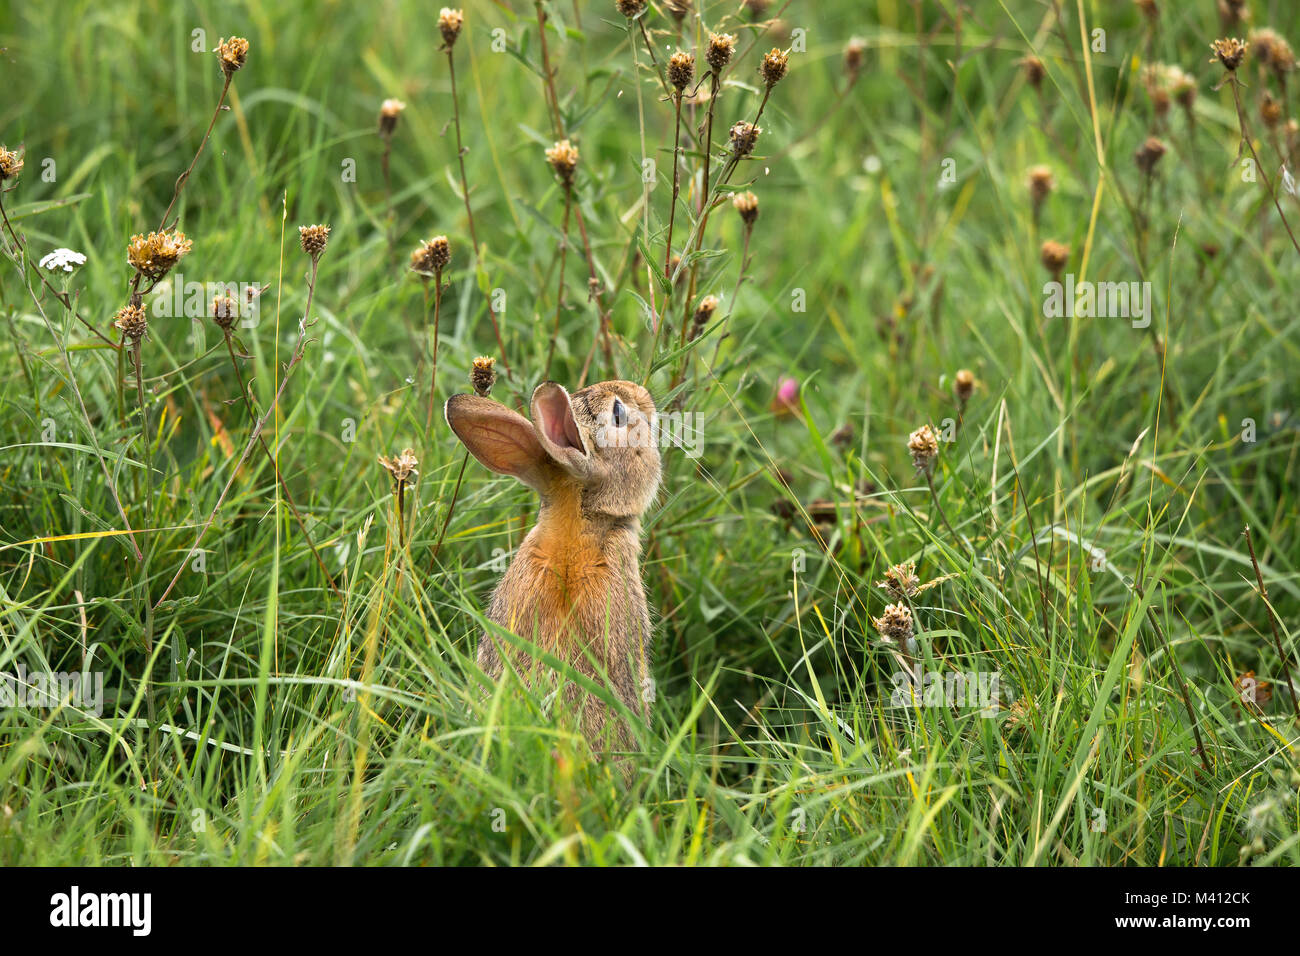 Nahaufnahme des wilden britischen Kaninchens (Oryctolagus cuniculus), das isoliert auf einer überwucherten Sommerwiese sitzt und langes Gras frisst. Stockfoto